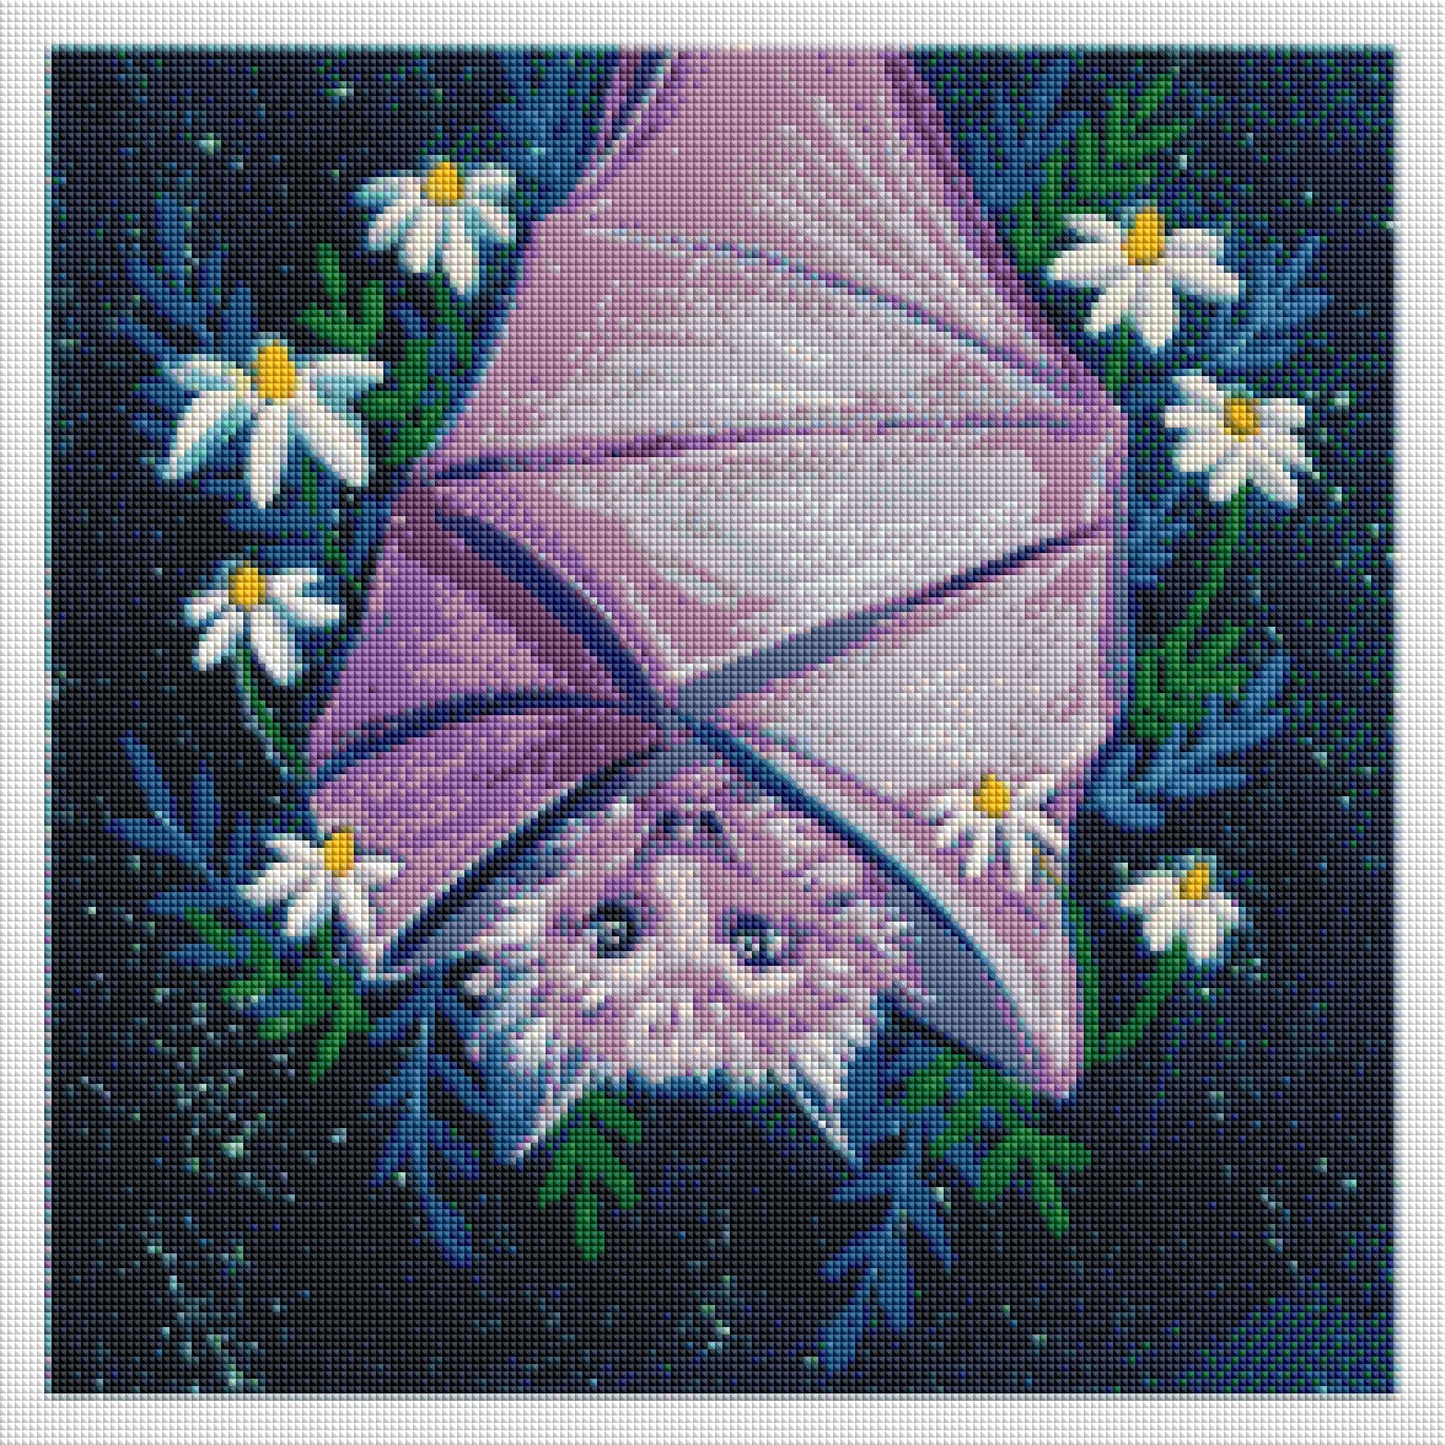 Lavendar Bat by Genleeart